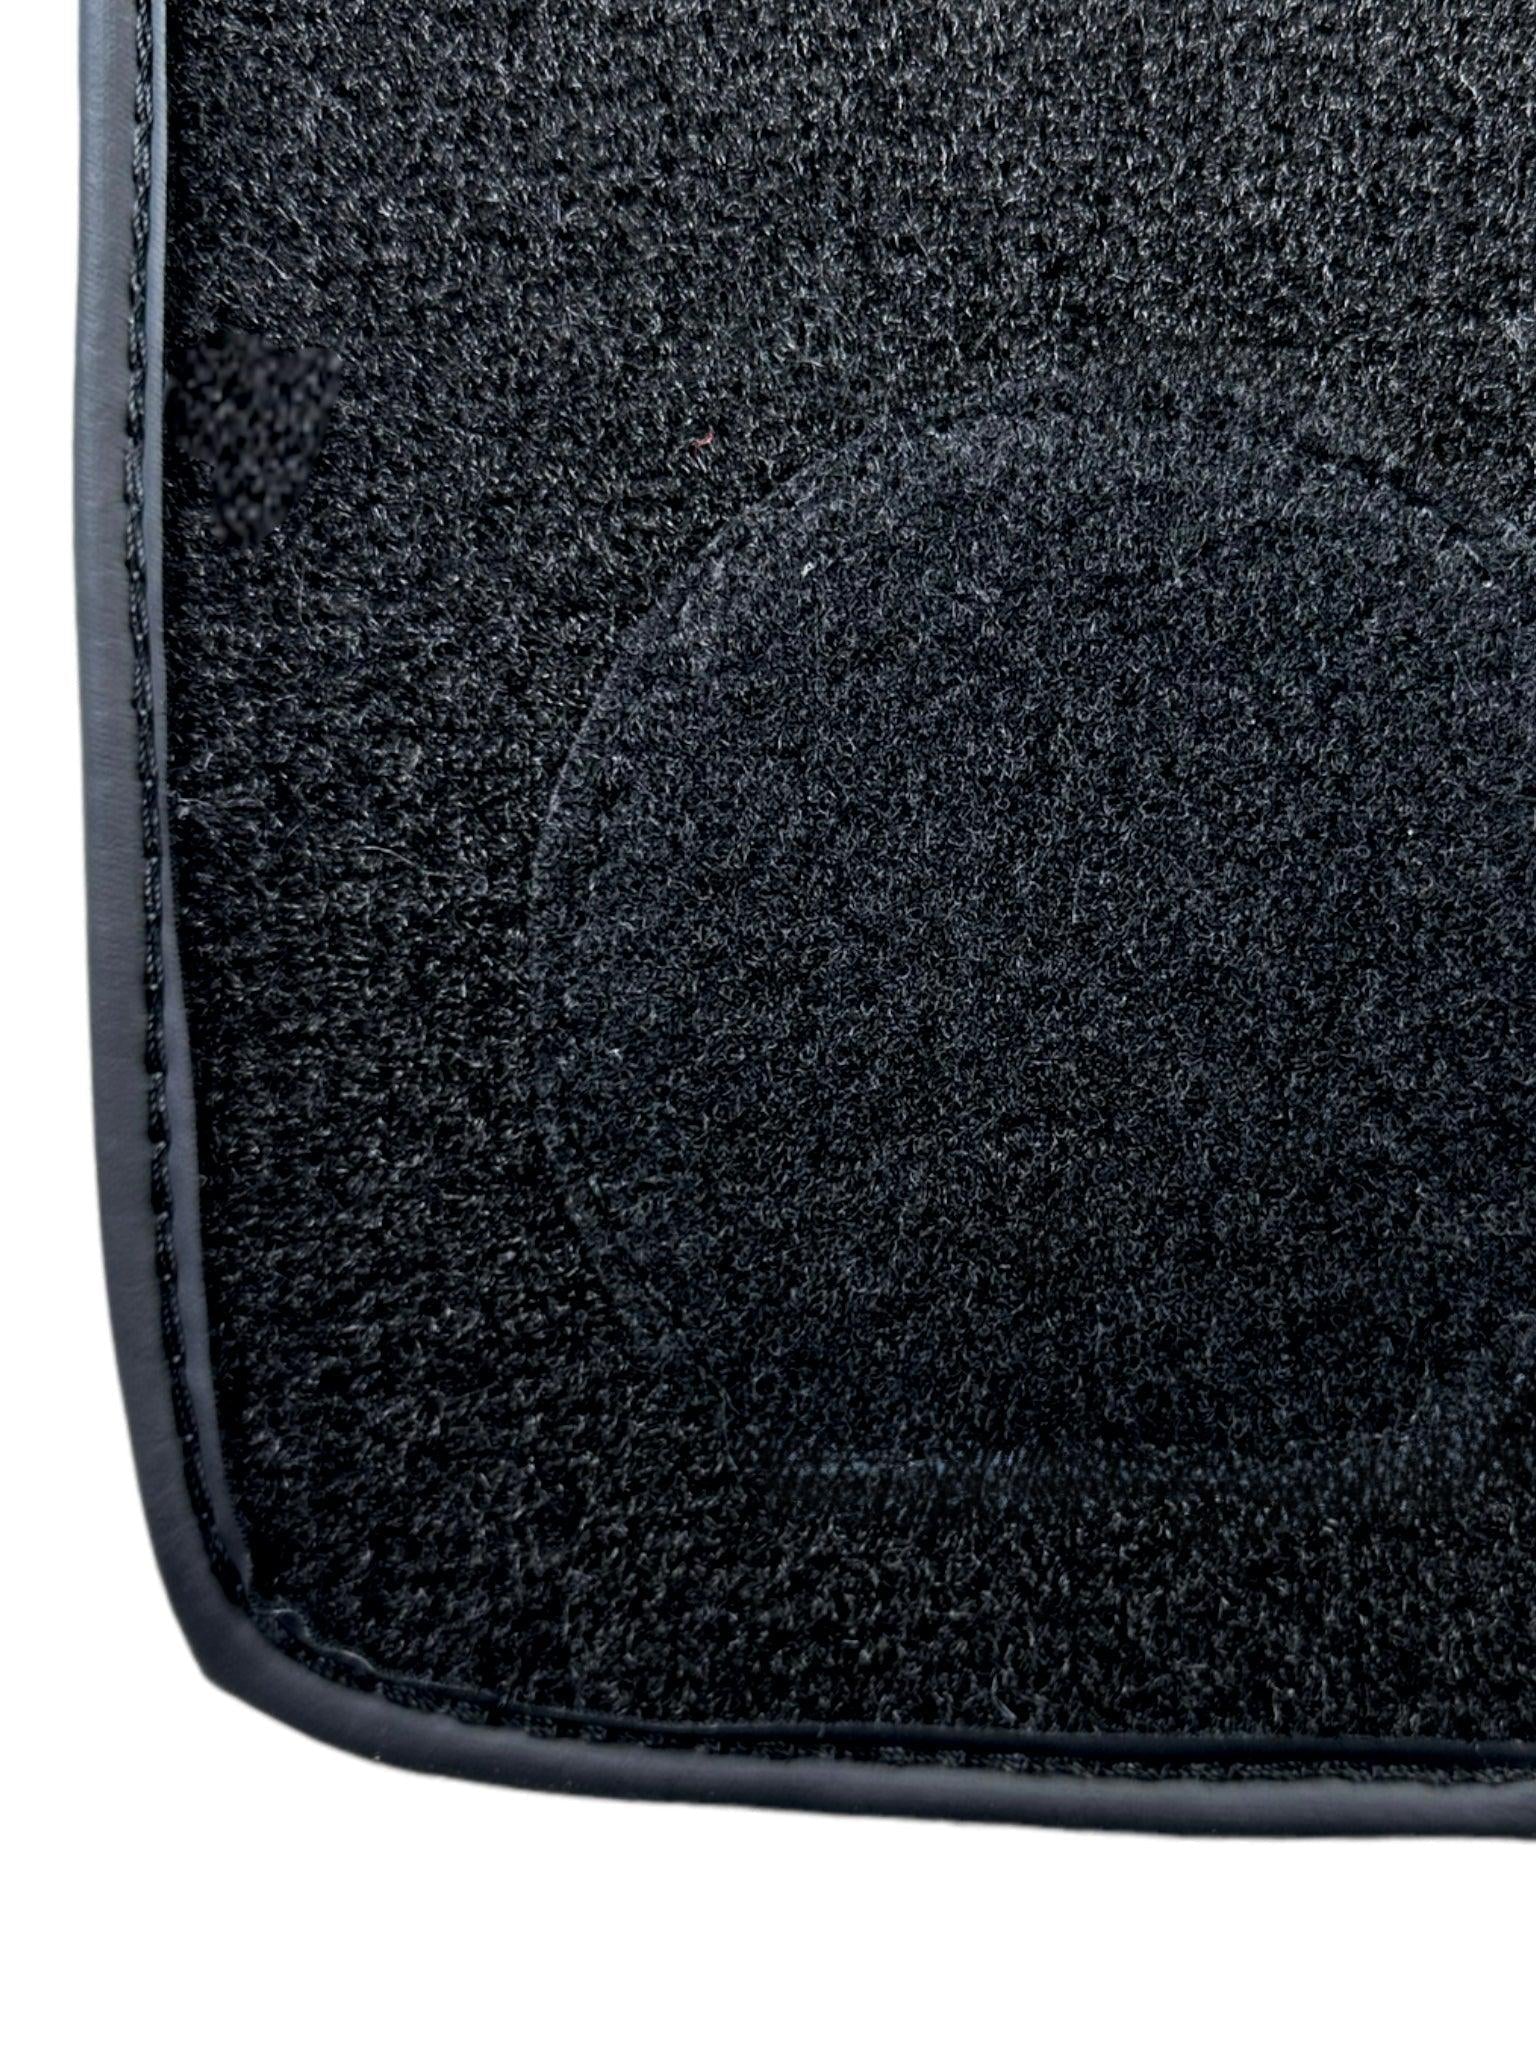 Black Sheepskin Floor Floor Mats For BMW X1 Series E84 ER56 Design